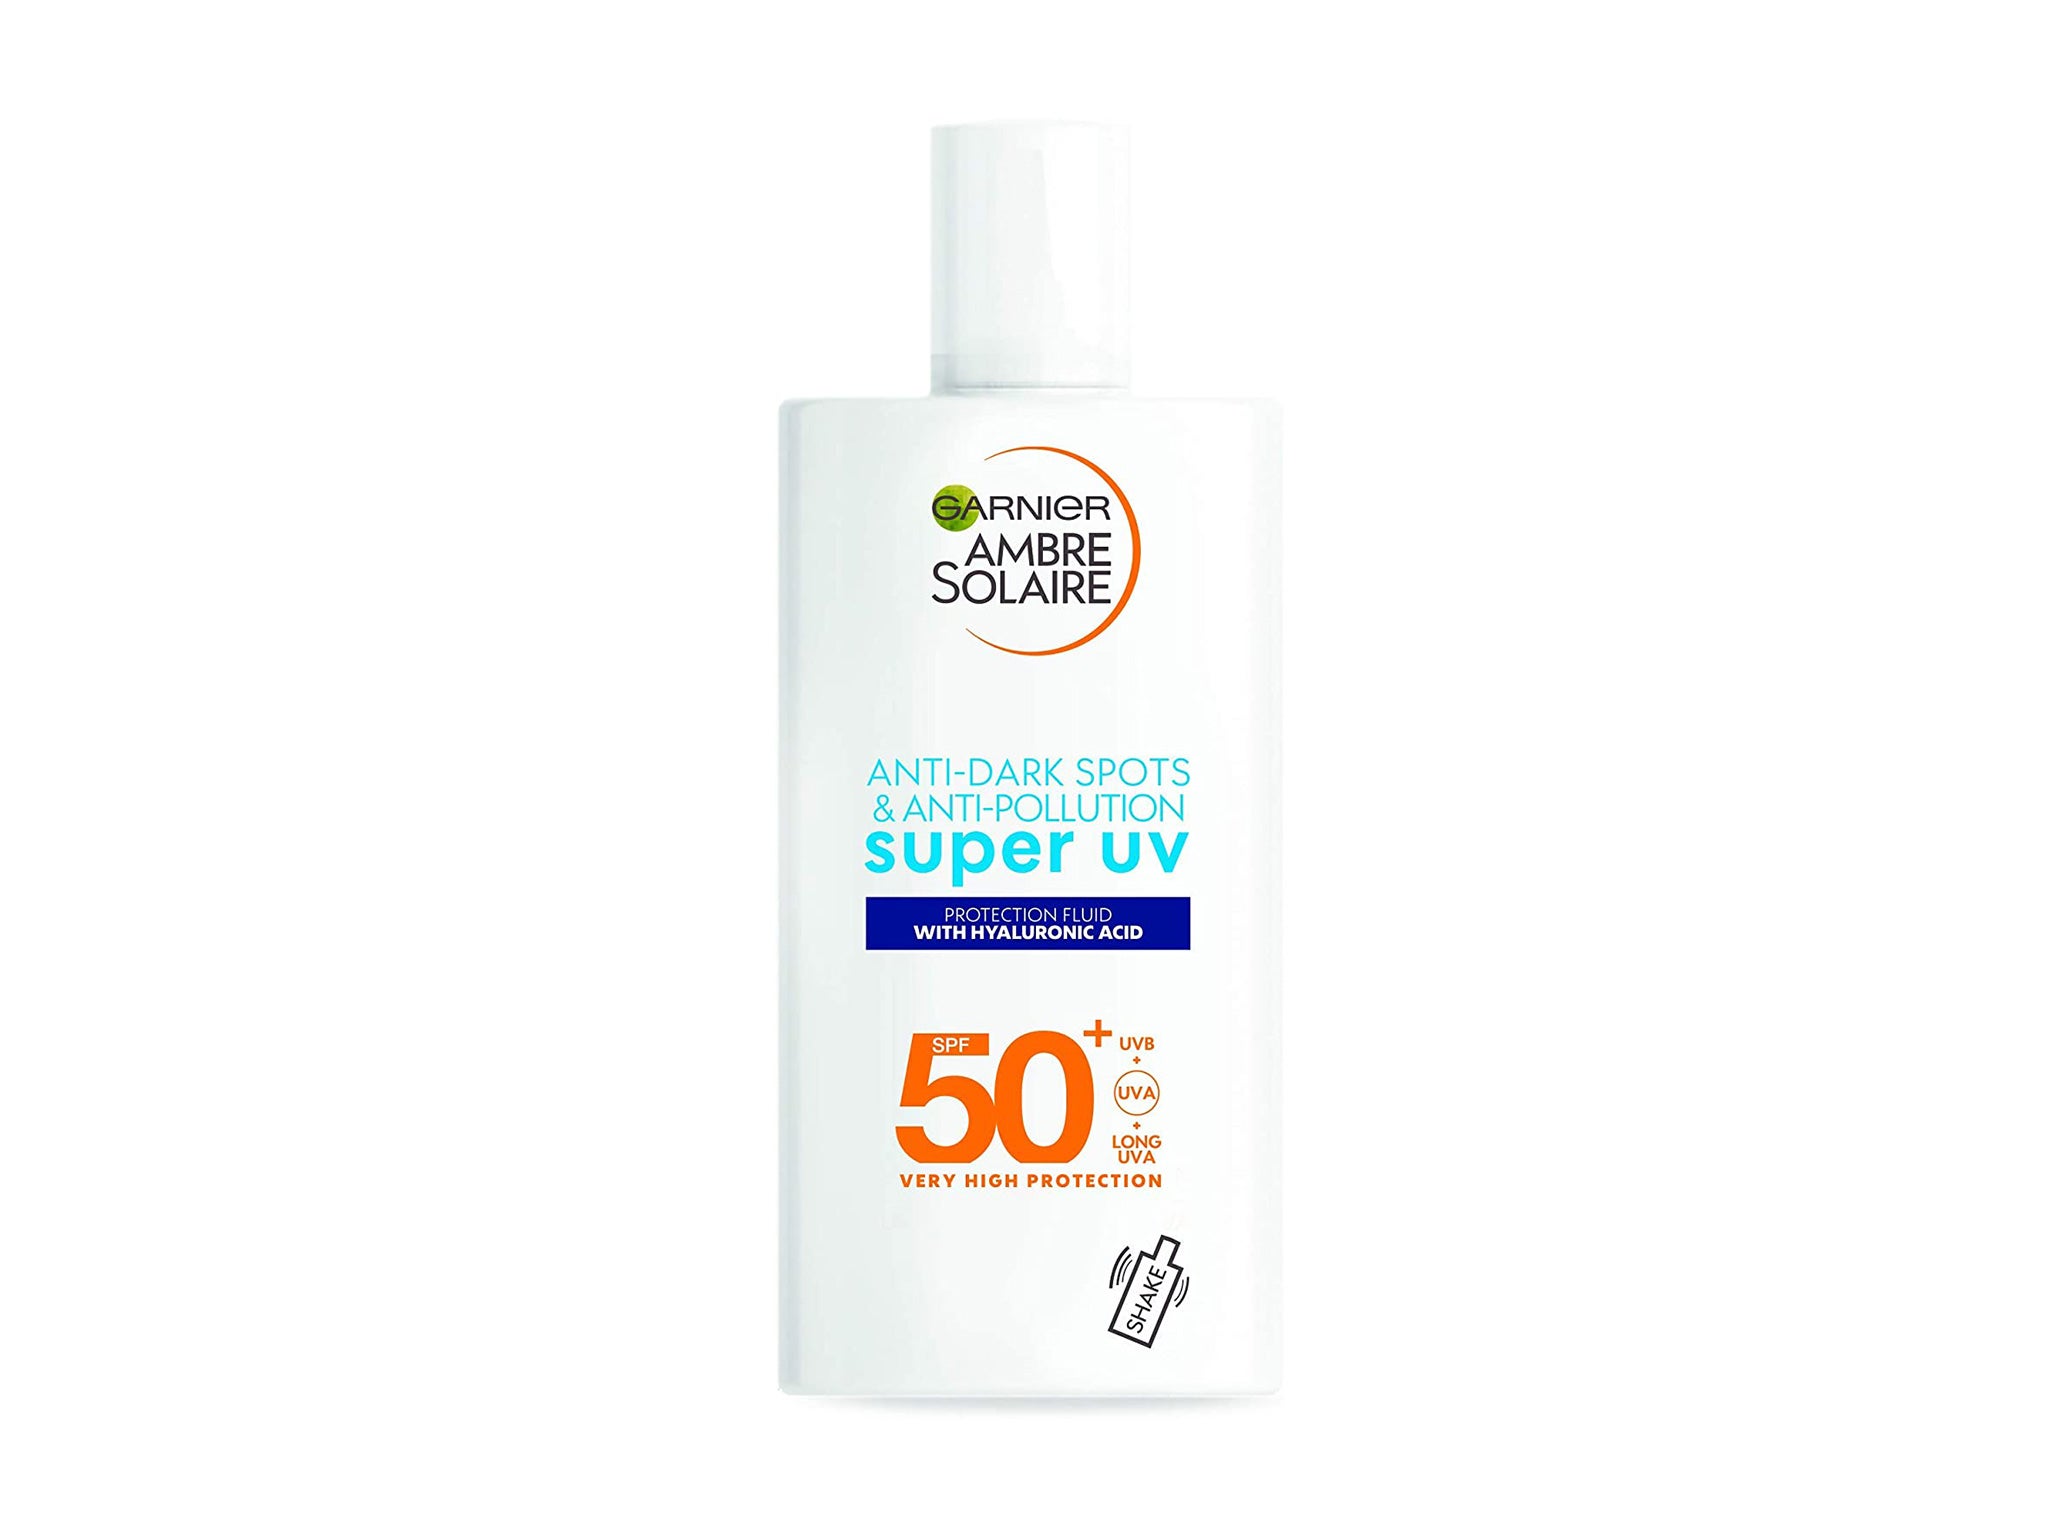 Garnier Ambre Solaire Super UV Anti Dark Spots & Anti Pollution Face Fluid SPF50+